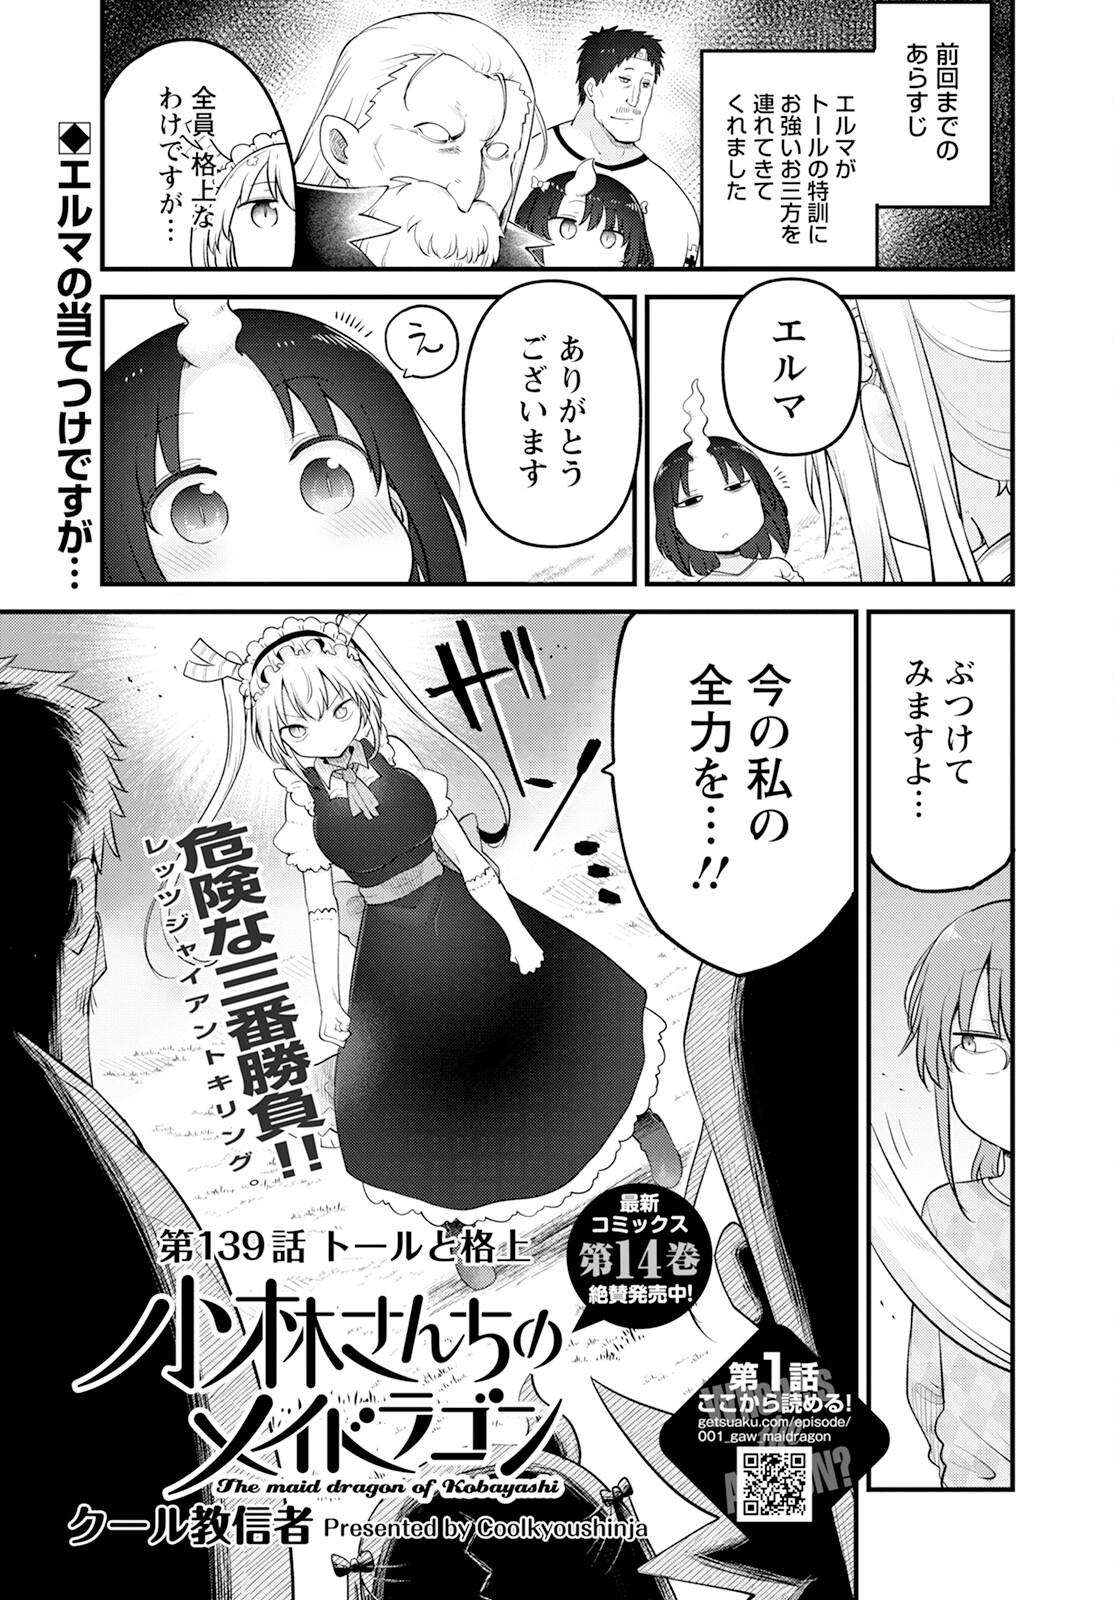 Kobayashi-san Chi no Maid Dragon - Chapter 139 - Page 1